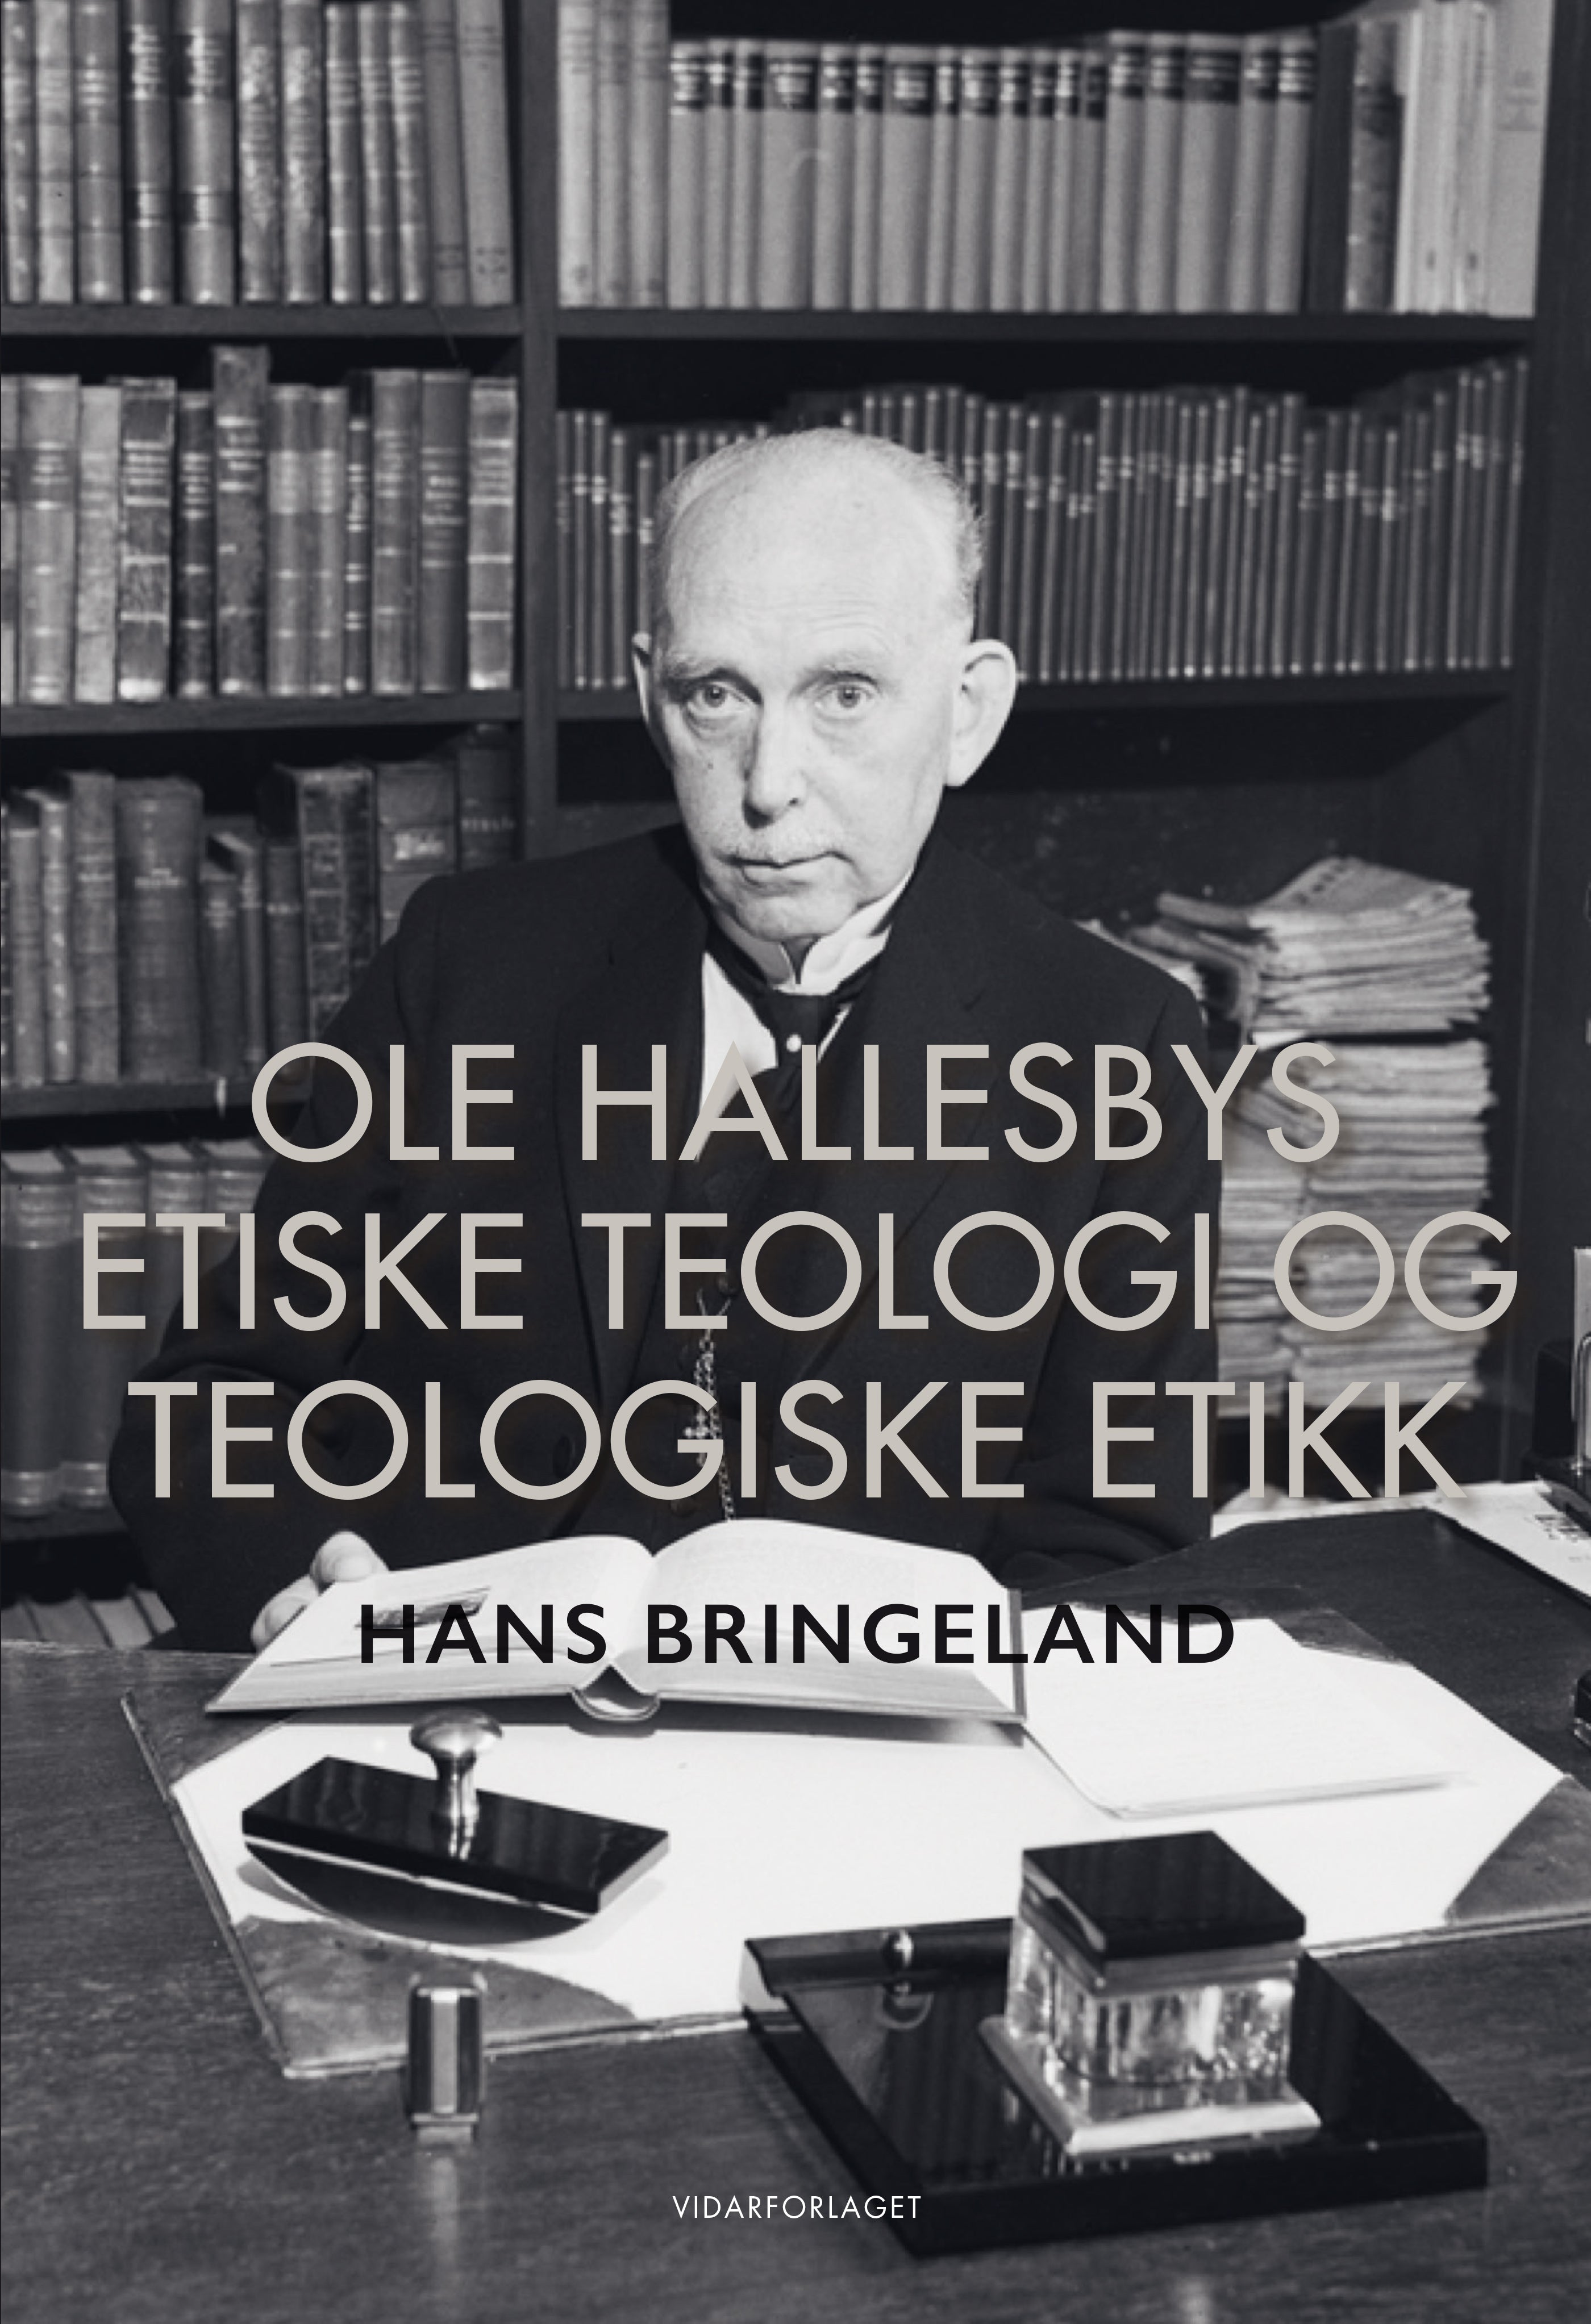 Ole Hallesbys etiske teologi og teologiske etikk: pietistisk morallære mellom kantiansk formalisme og biblistisk kasuistikk